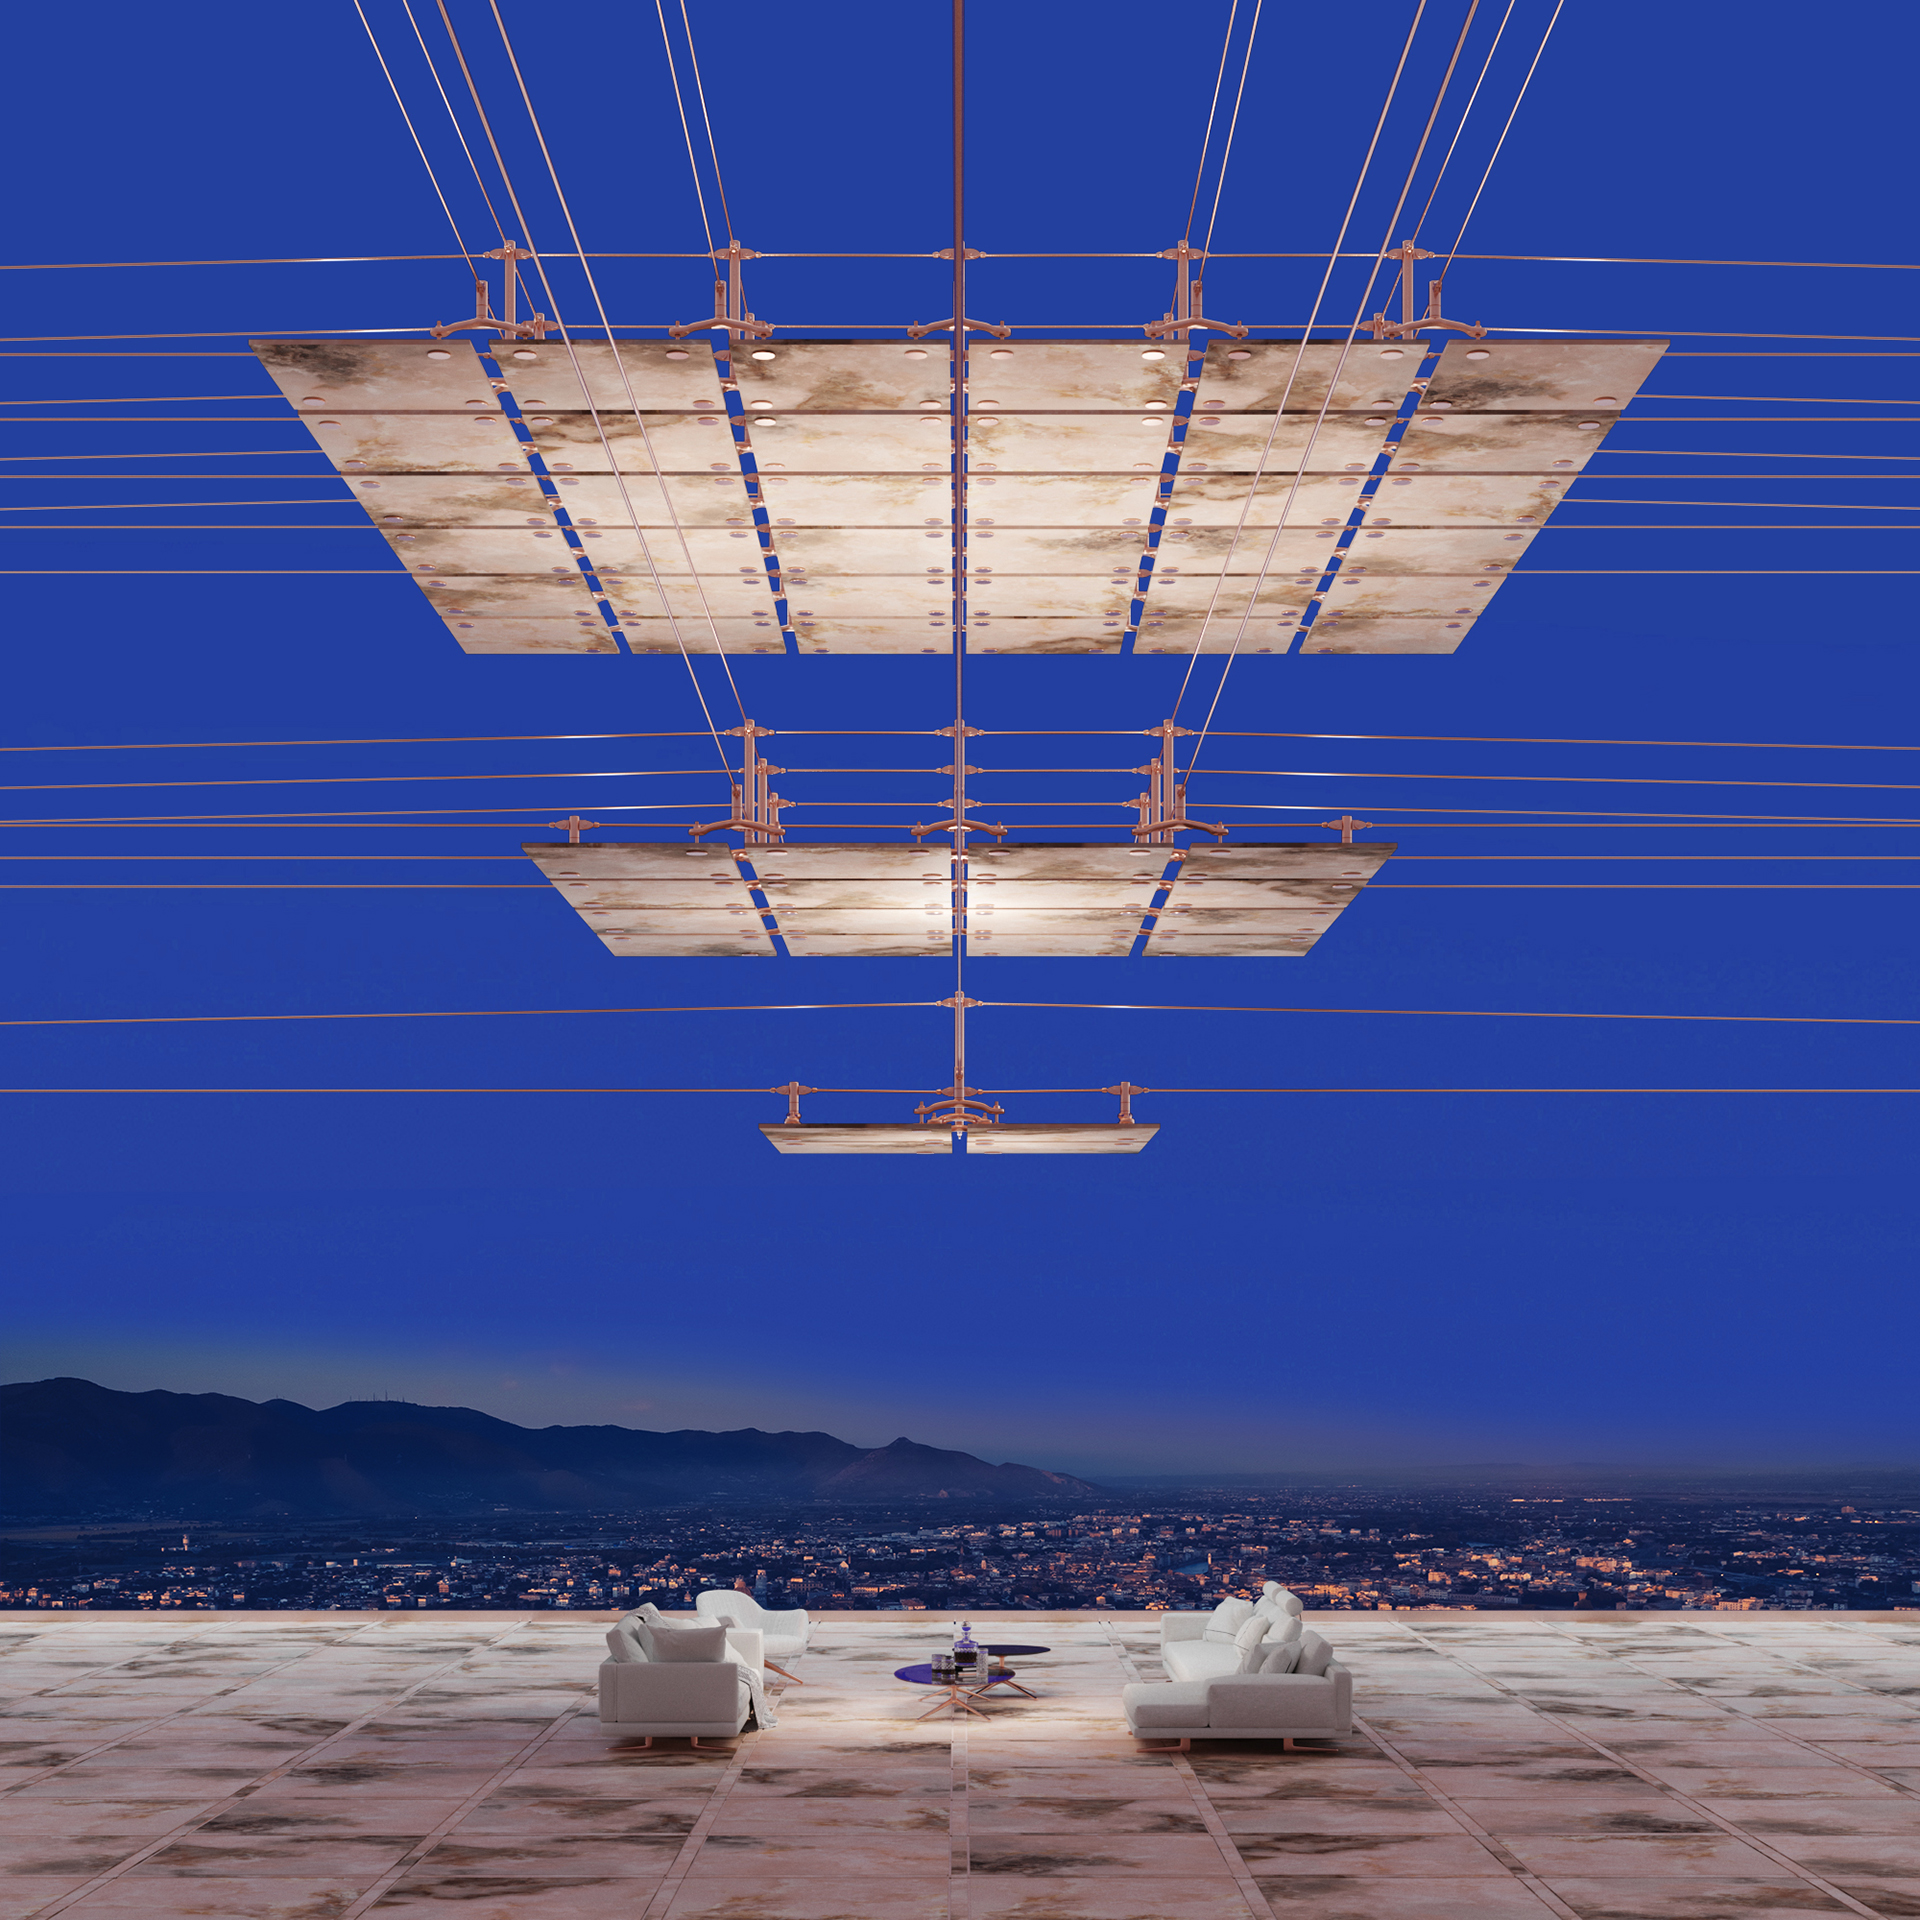 15 Konkurs Tubądzin Design Awards, kategoria Unlimited Architecture - wizualizacja pokazująca szeroki kadr instalacji z wykorzystaniem płytek Tubądzin, podwieszonej na tarasie nad meblami wypoczynkowymi. Zmierzch, w tle granatowe niebo i nocna panorama miasta.